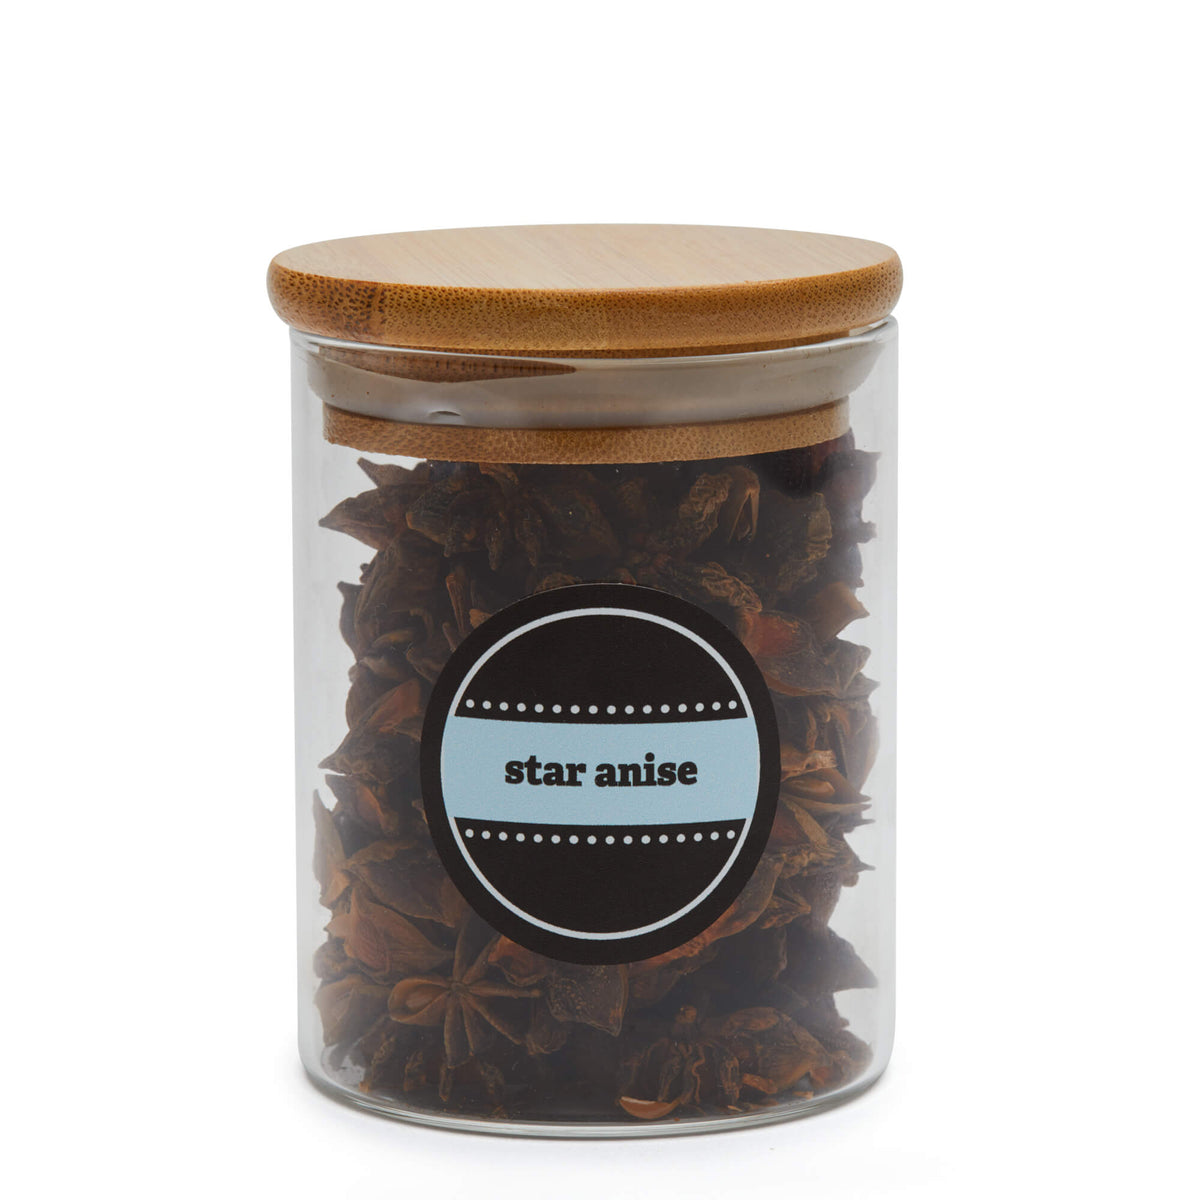 Spice Jar Label Set - Design 2